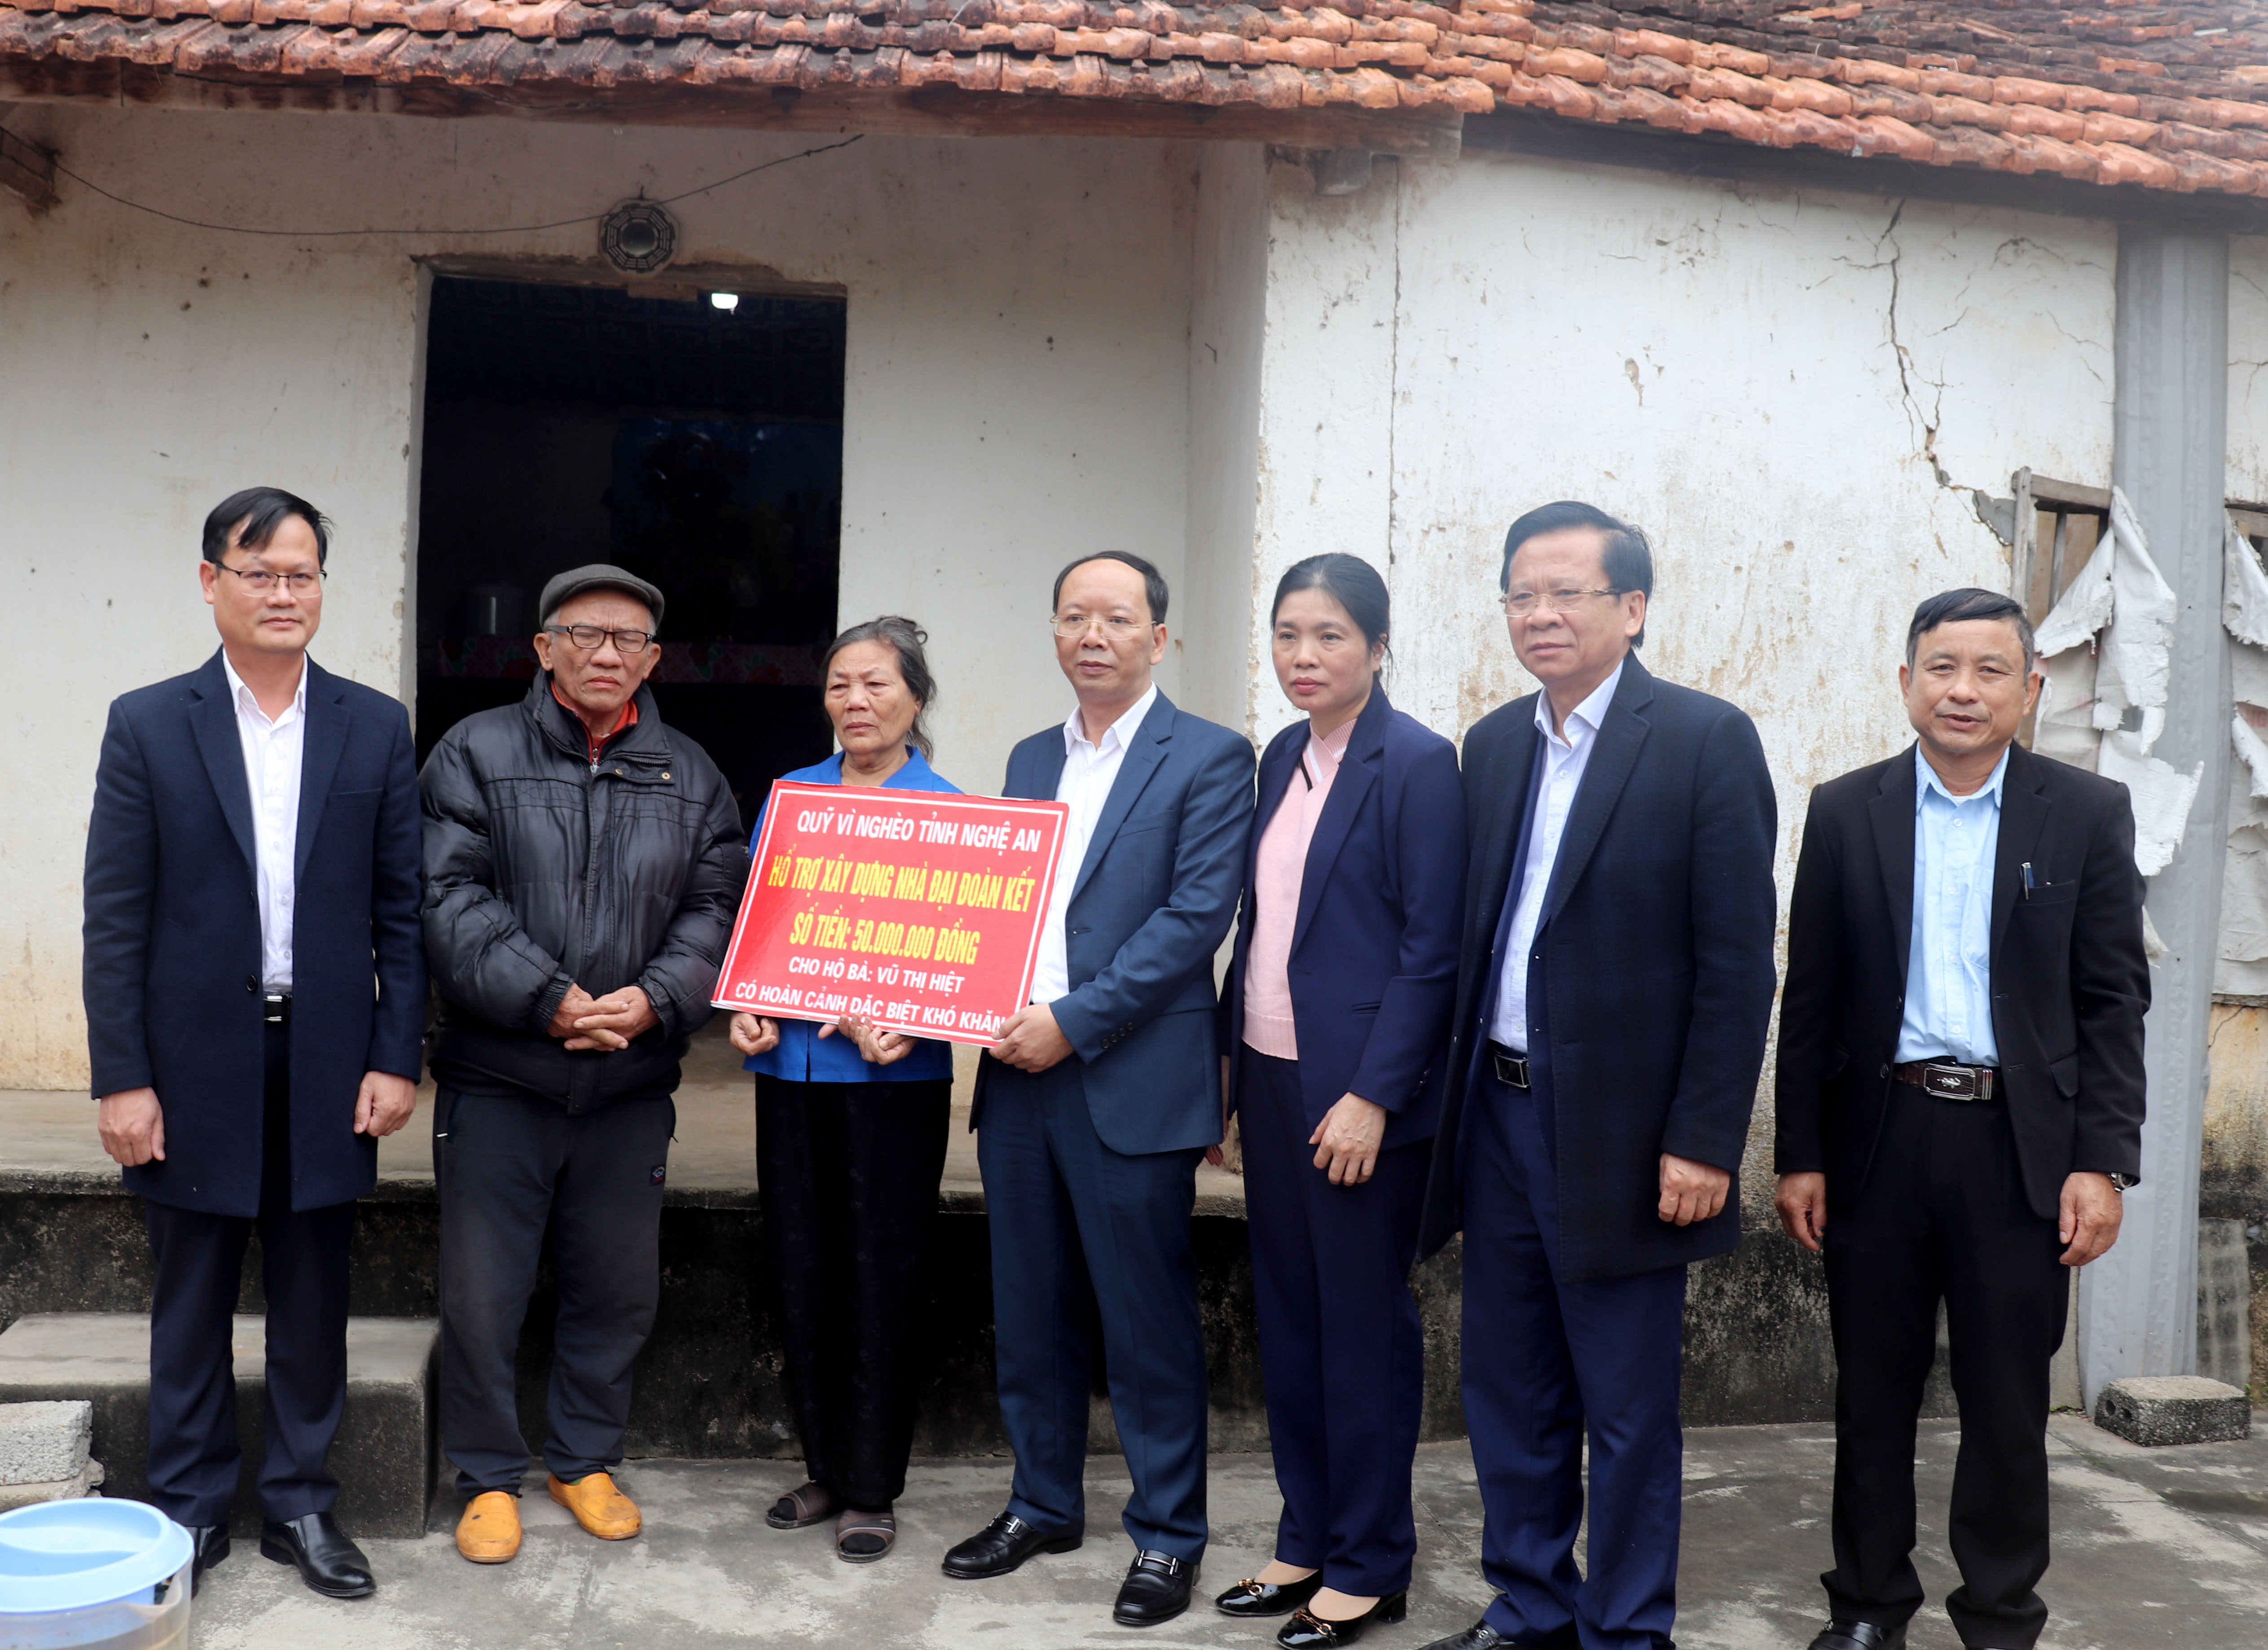 Đồng chí Bùi Thanh An - Chủ nhiệm UBKT Tỉnh ủy trao số tiền 50 triệu đồng làm nhà đại đoàn kết cho gia đình bà Vũ Thị Hiệt ở xóm Vĩnh Tiến, xã Vĩnh Thành.